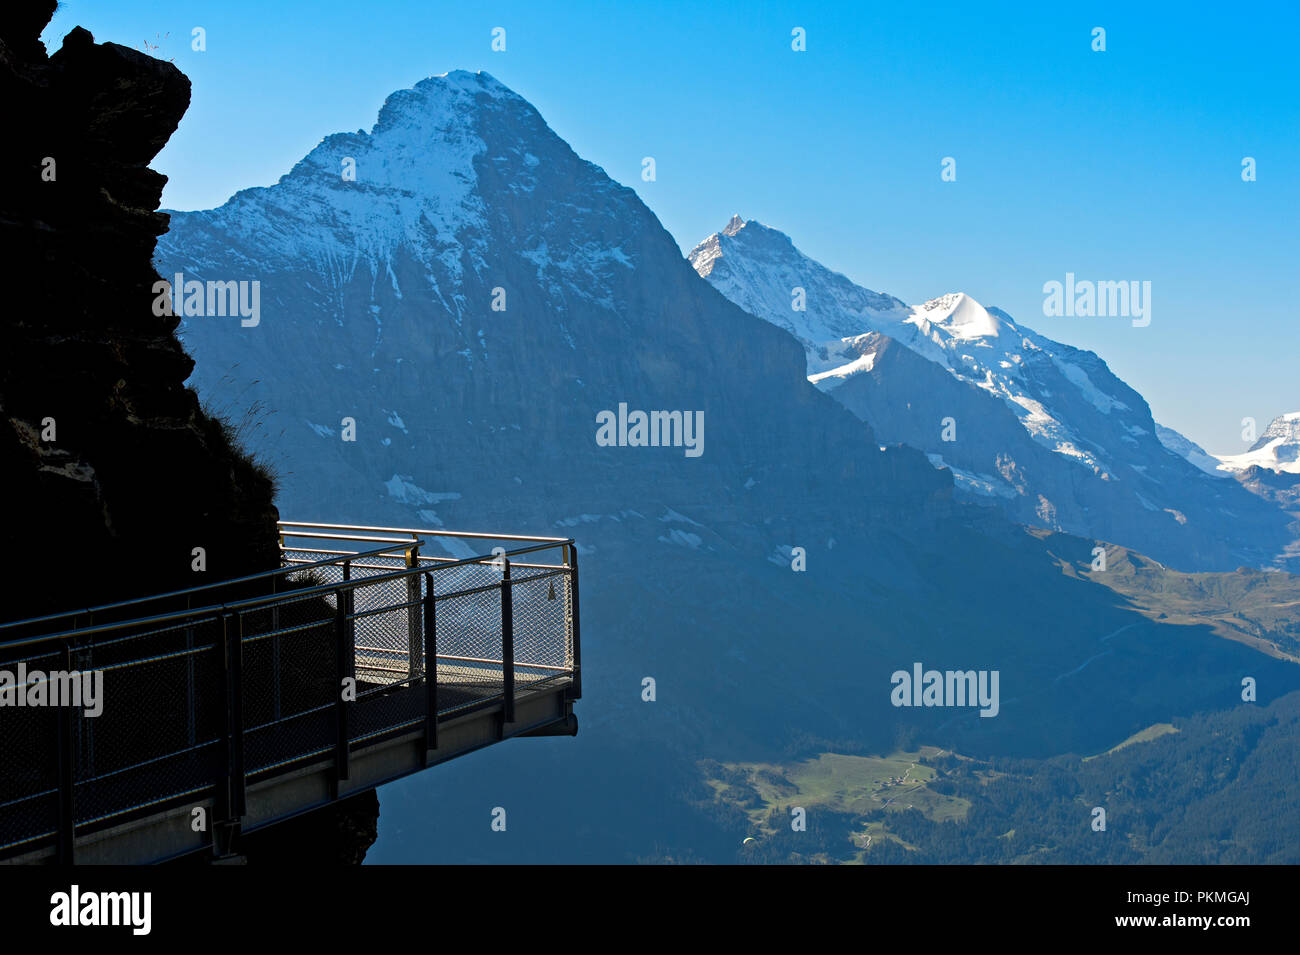 Primer Cliff Walk por Tissot delante de la cara norte del Eiger, Grindelwald, Suiza Foto de stock